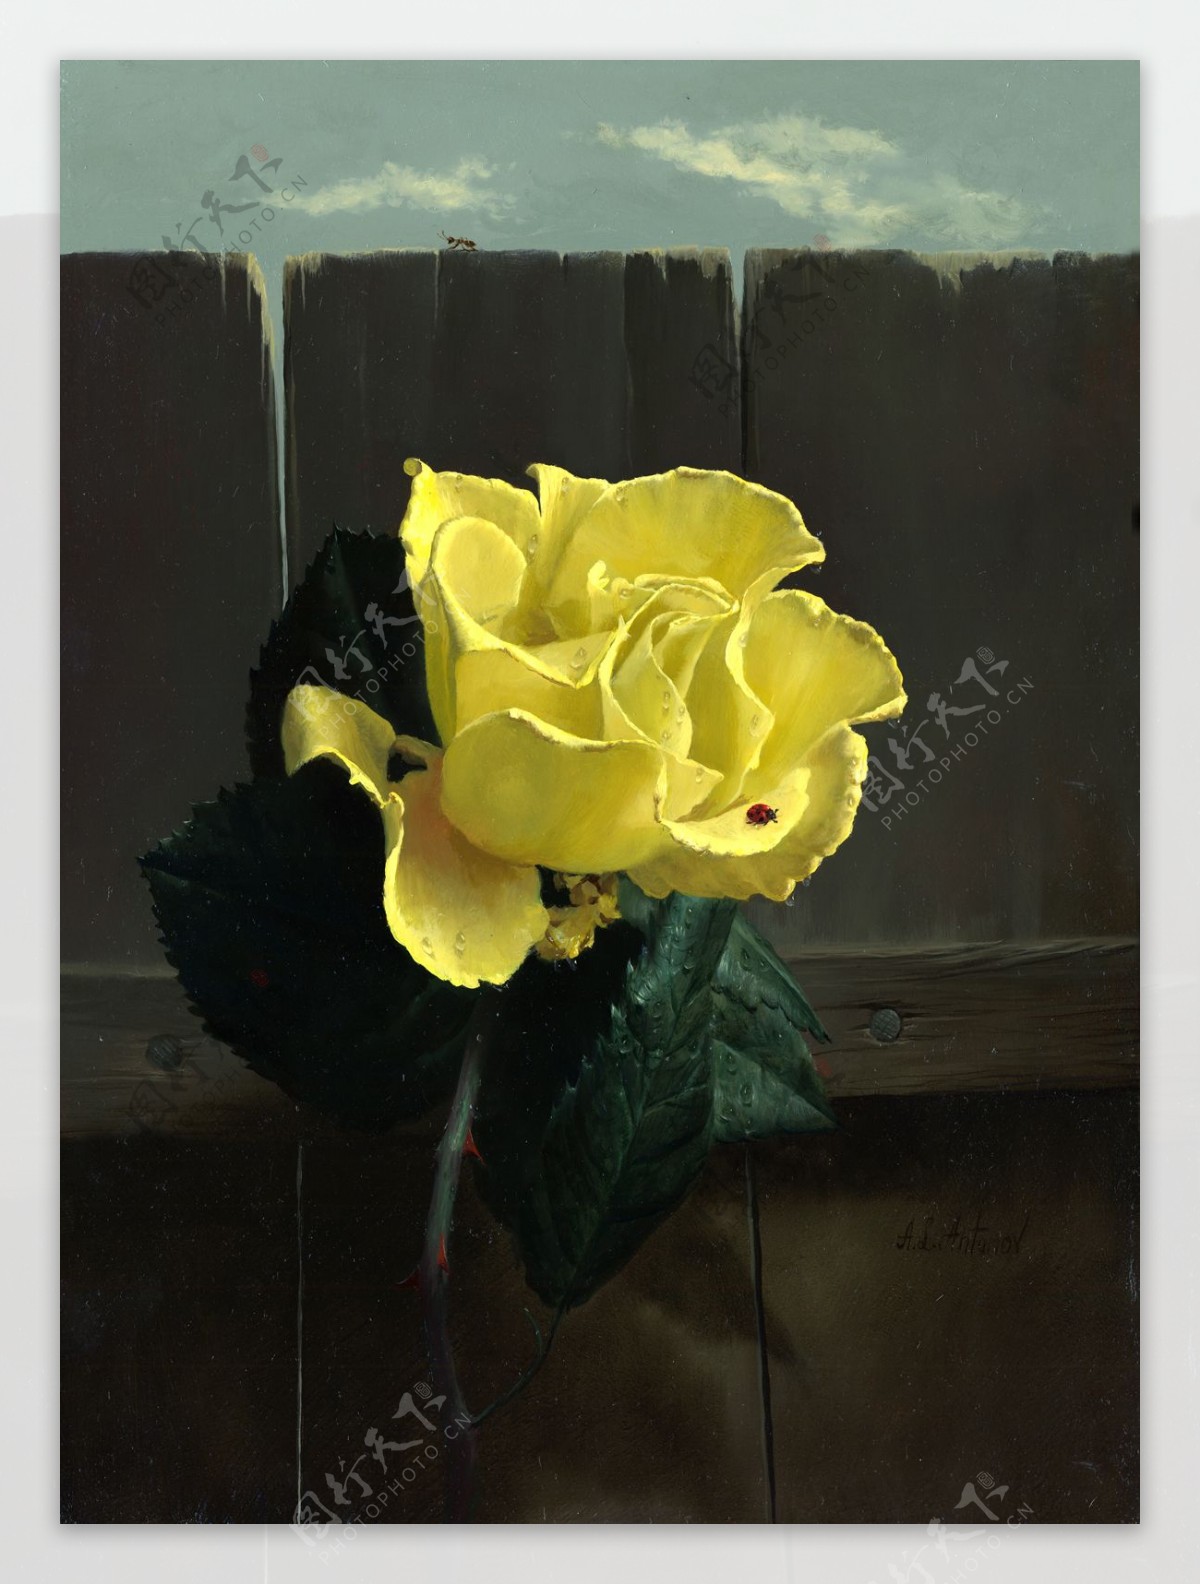 安东诺夫静物油画作品黄玫瑰